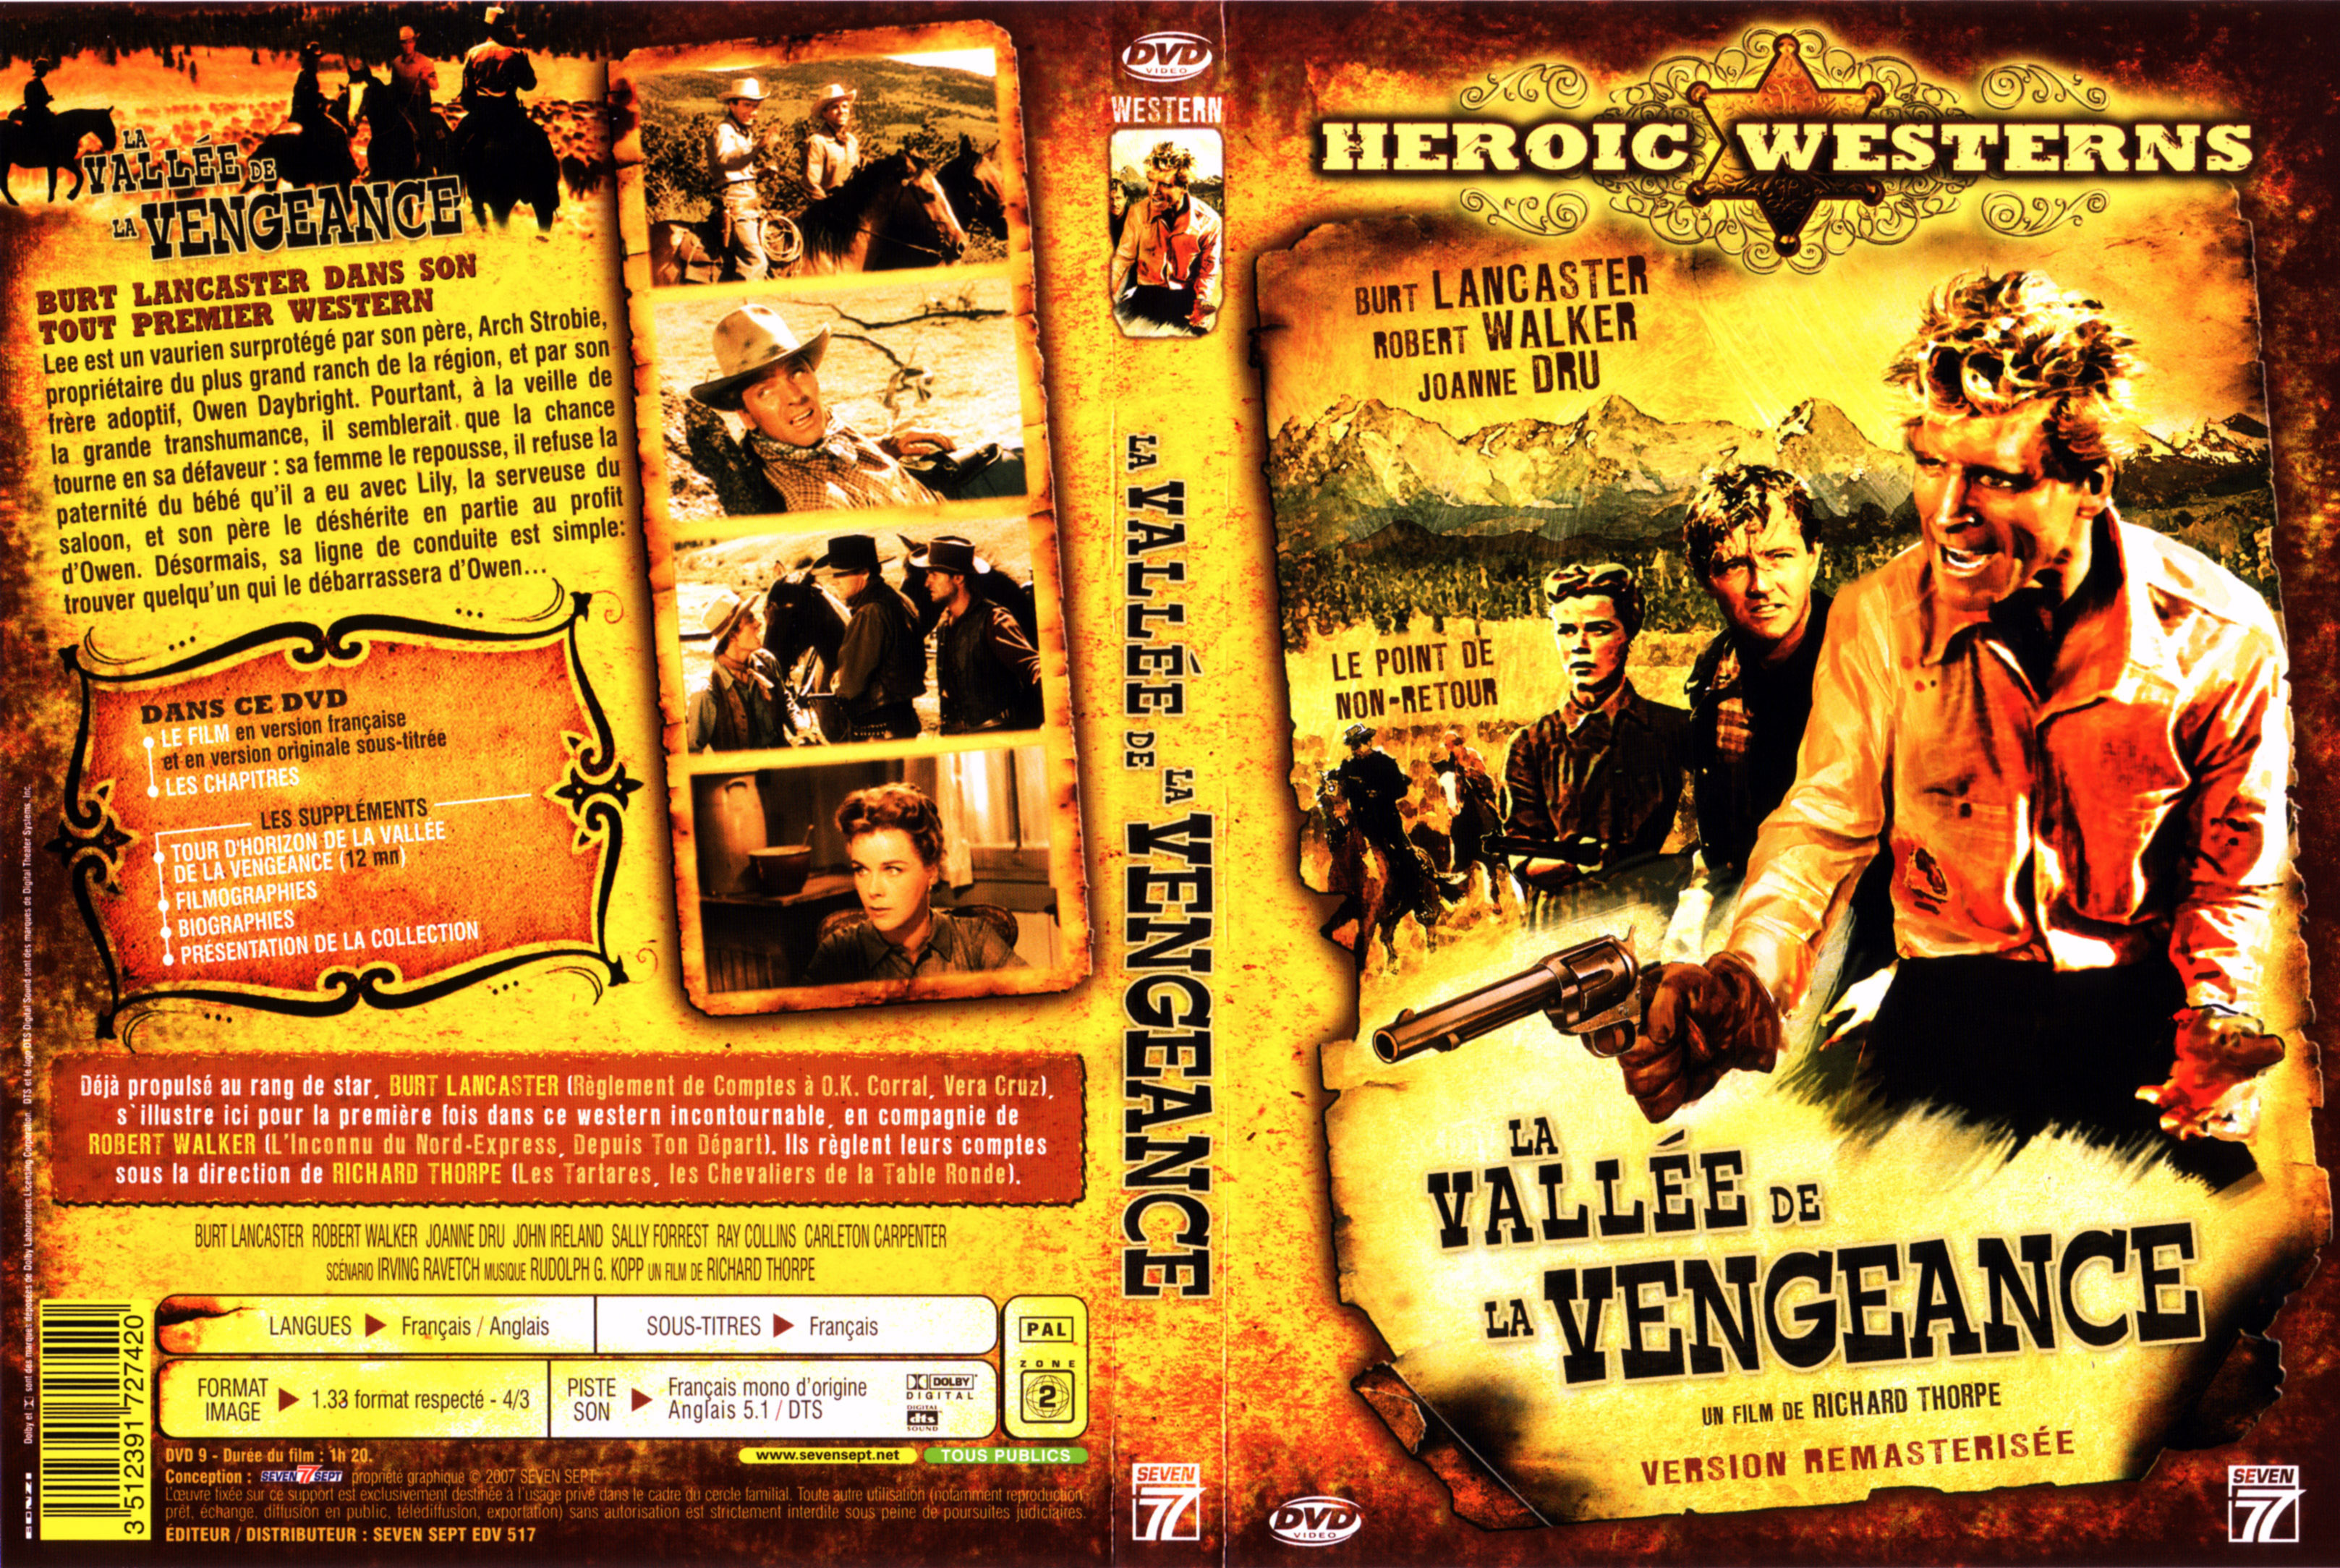 Jaquette DVD La valle de la vengeance v2